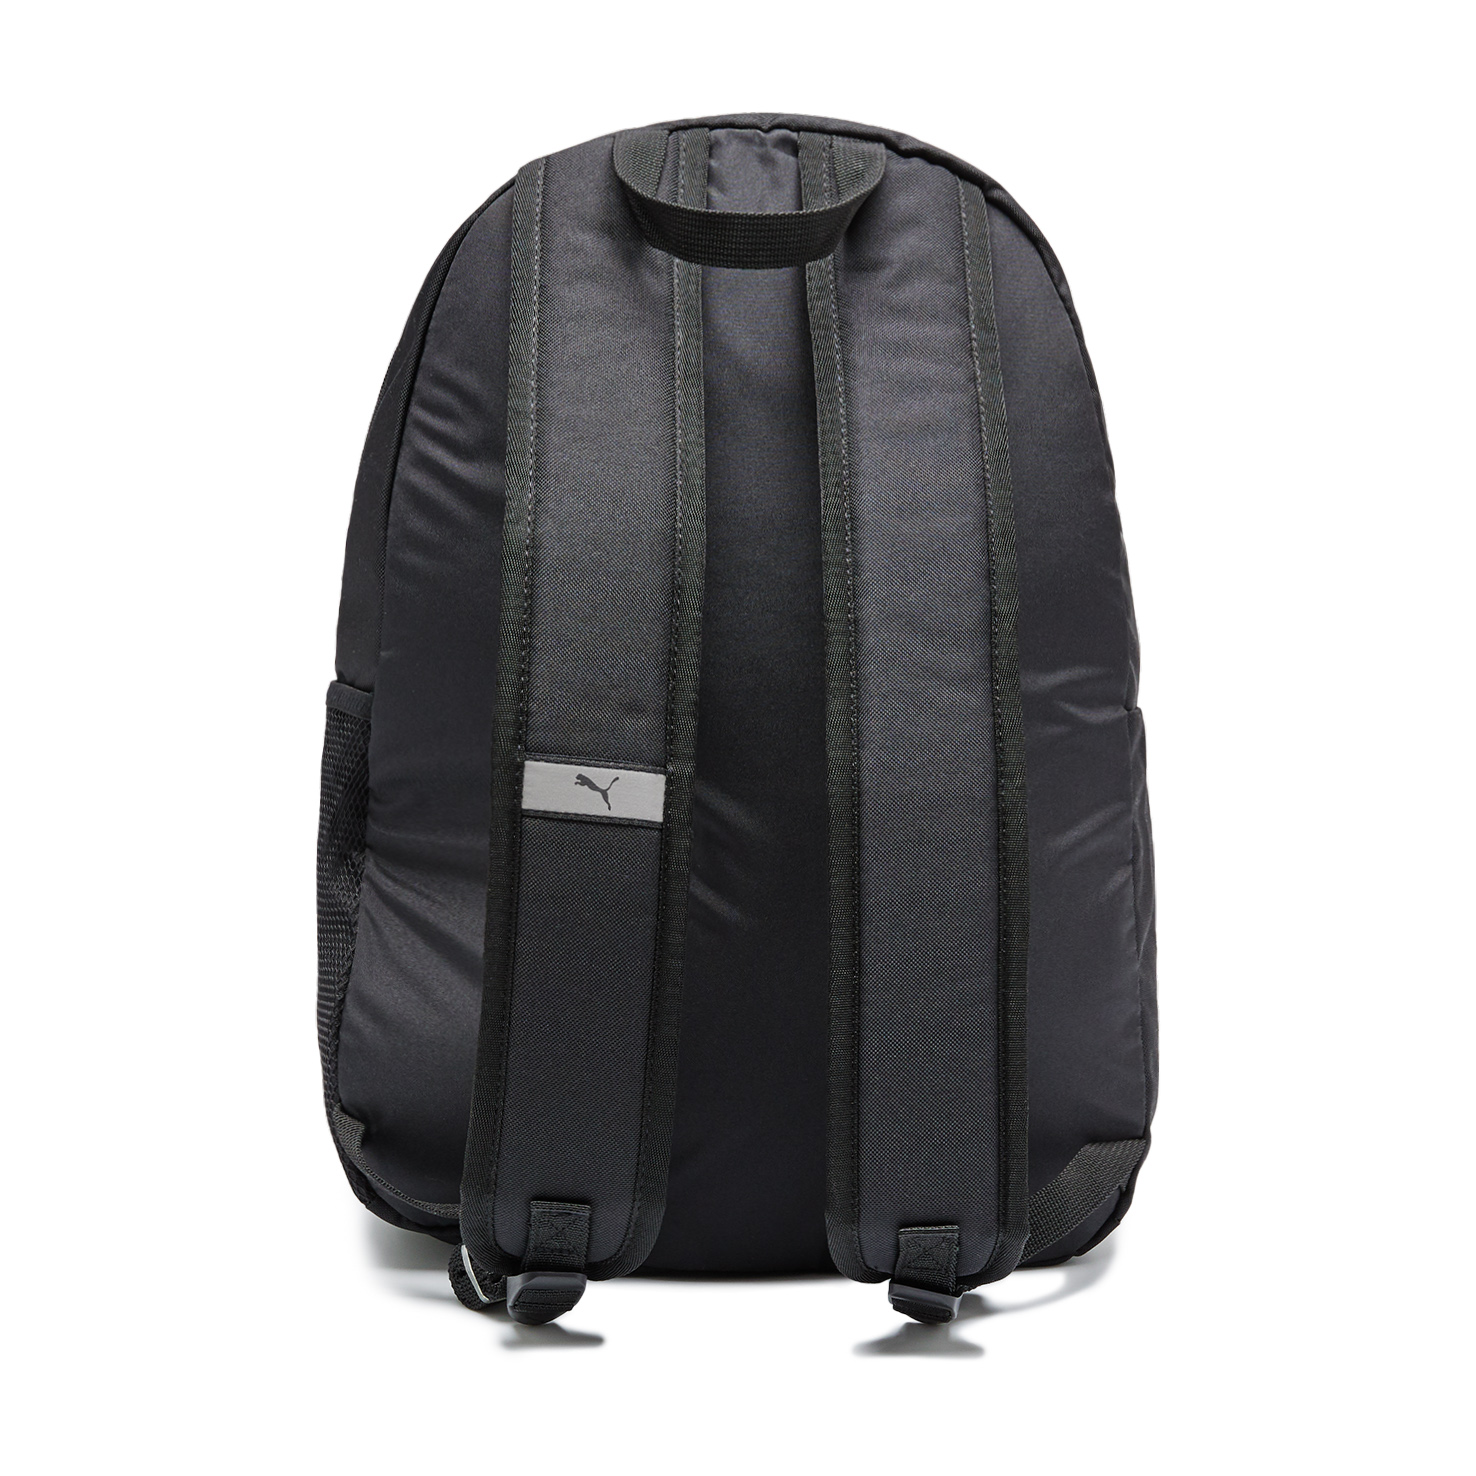 Phase Backpack No. 2 PUMA, размер Один размер, цвет черный PM077482 - фото 2